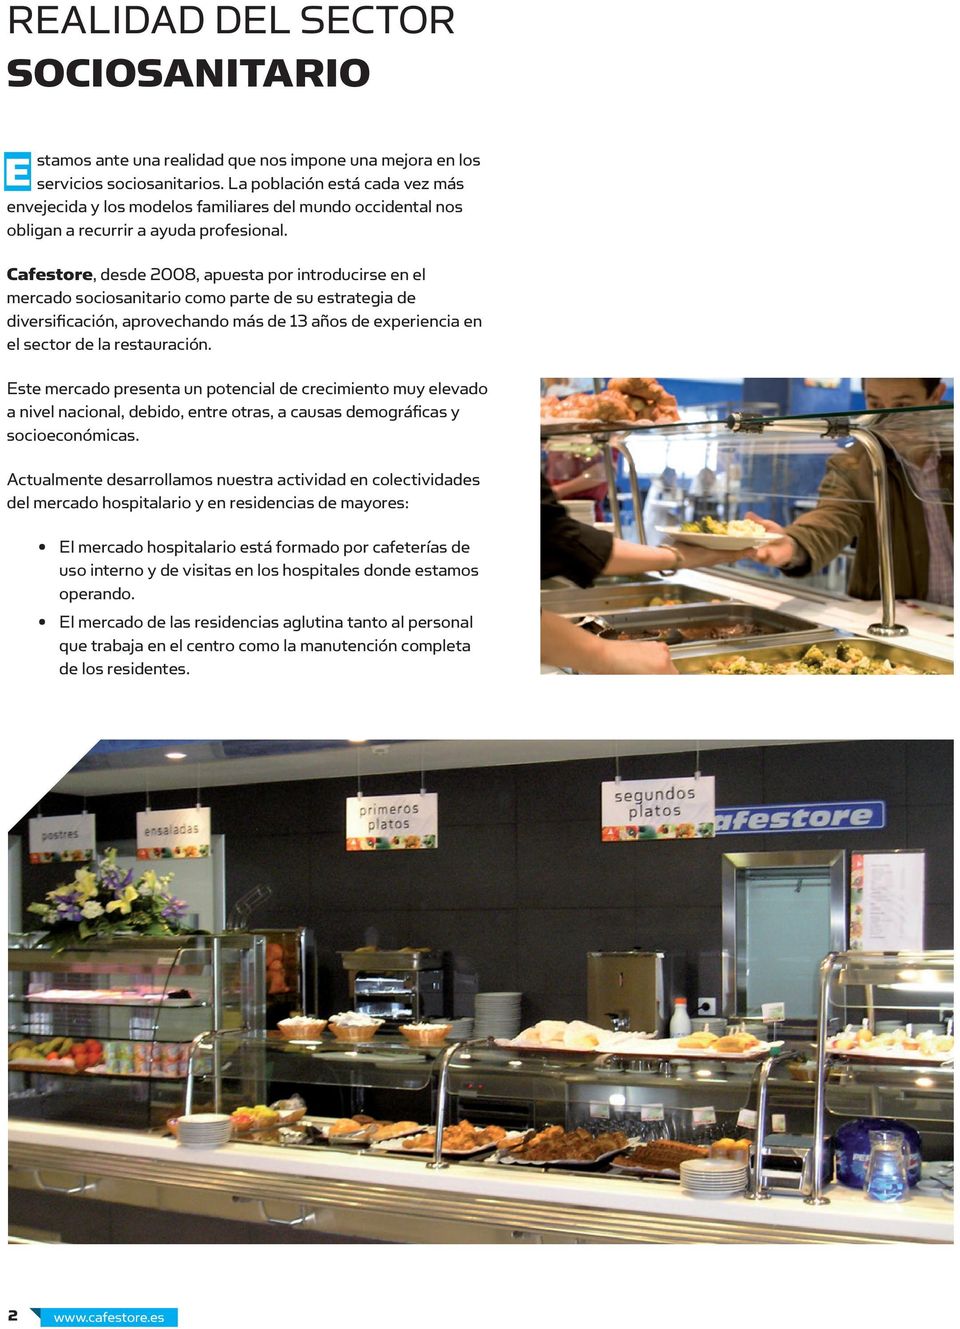 Cafestore, desde 2008, apuesta por introducirse en el mercado sociosanitario como parte de su estrategia de diversificación, aprovechando más de 13 años de experiencia en el sector de la restauración.